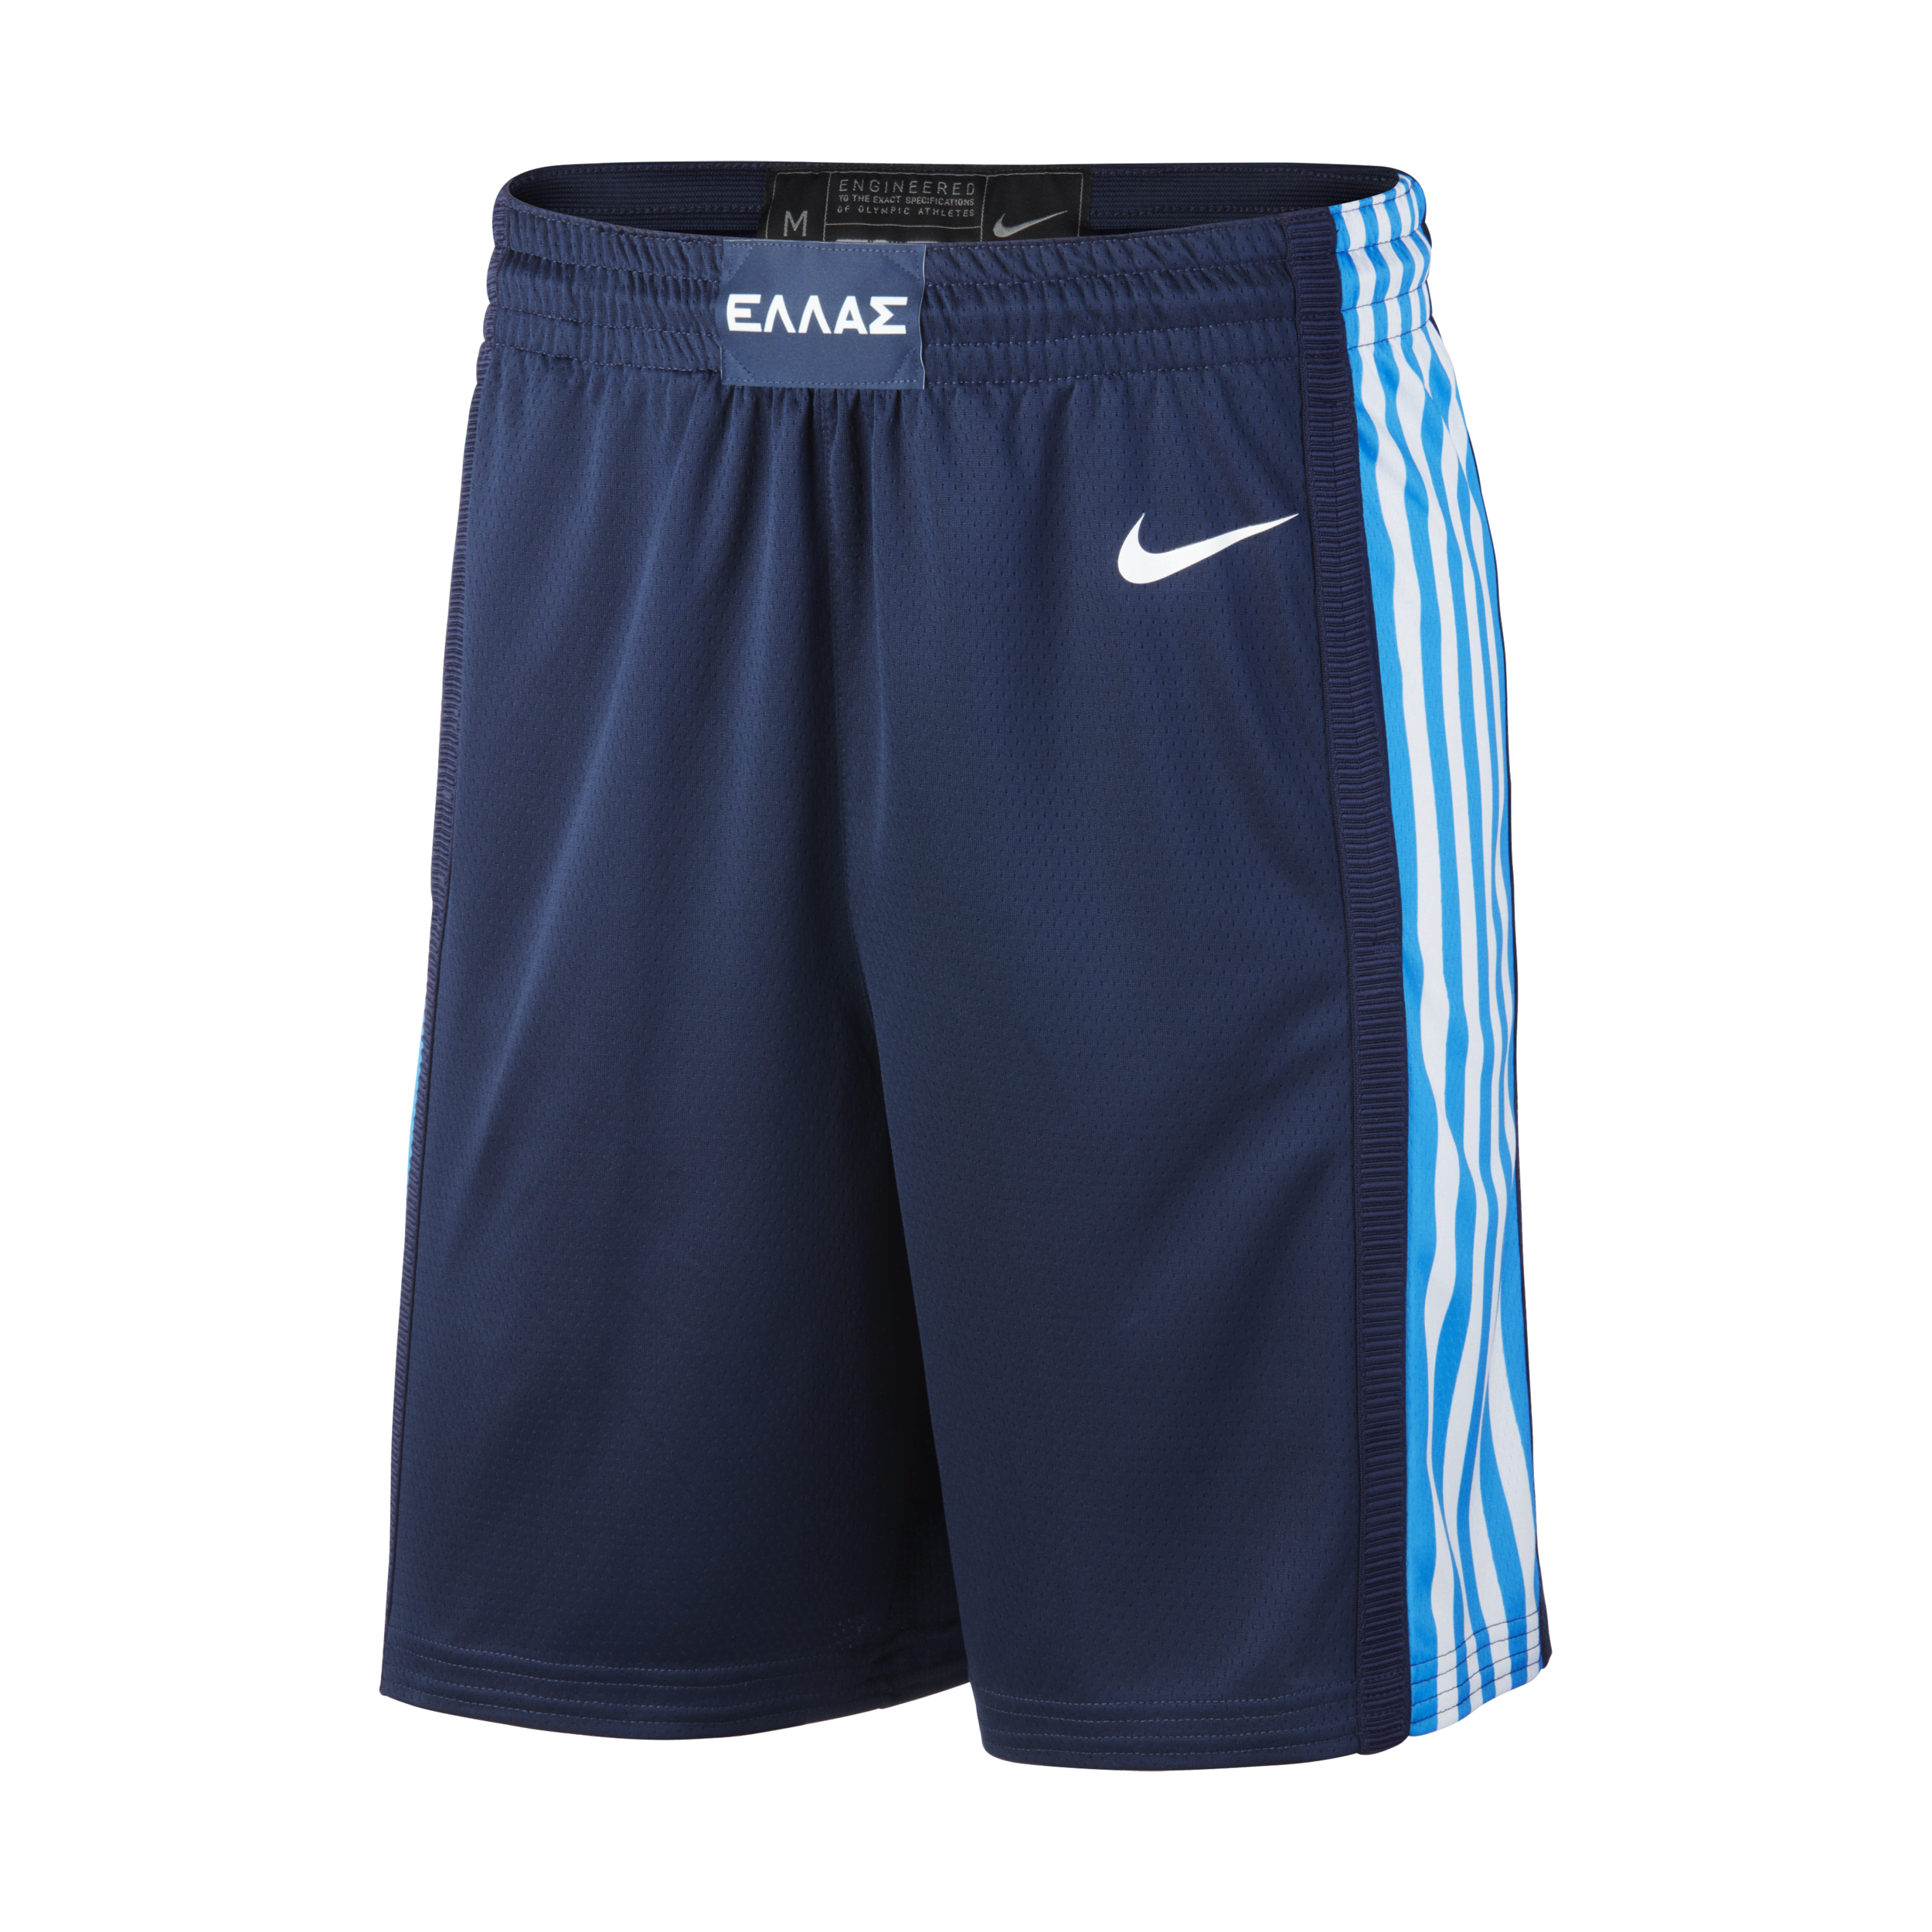 Grækenland Nike (Road) Limited-basketballshorts til mænd - blå